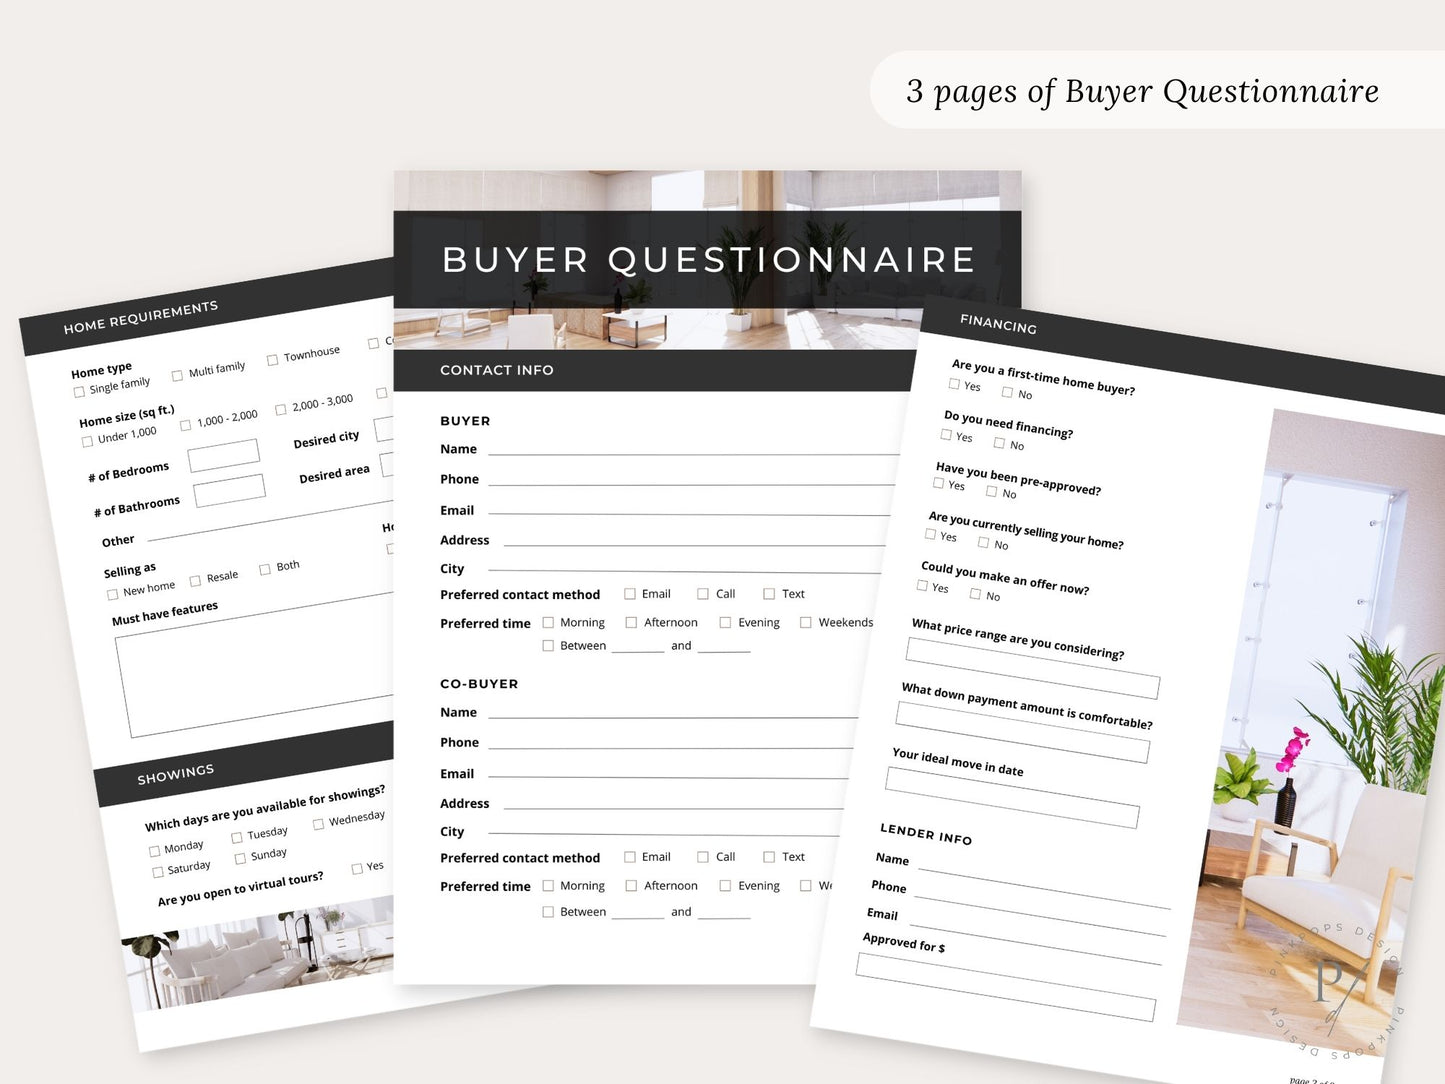 Black Buyer & Seller Questionnaire Bundle